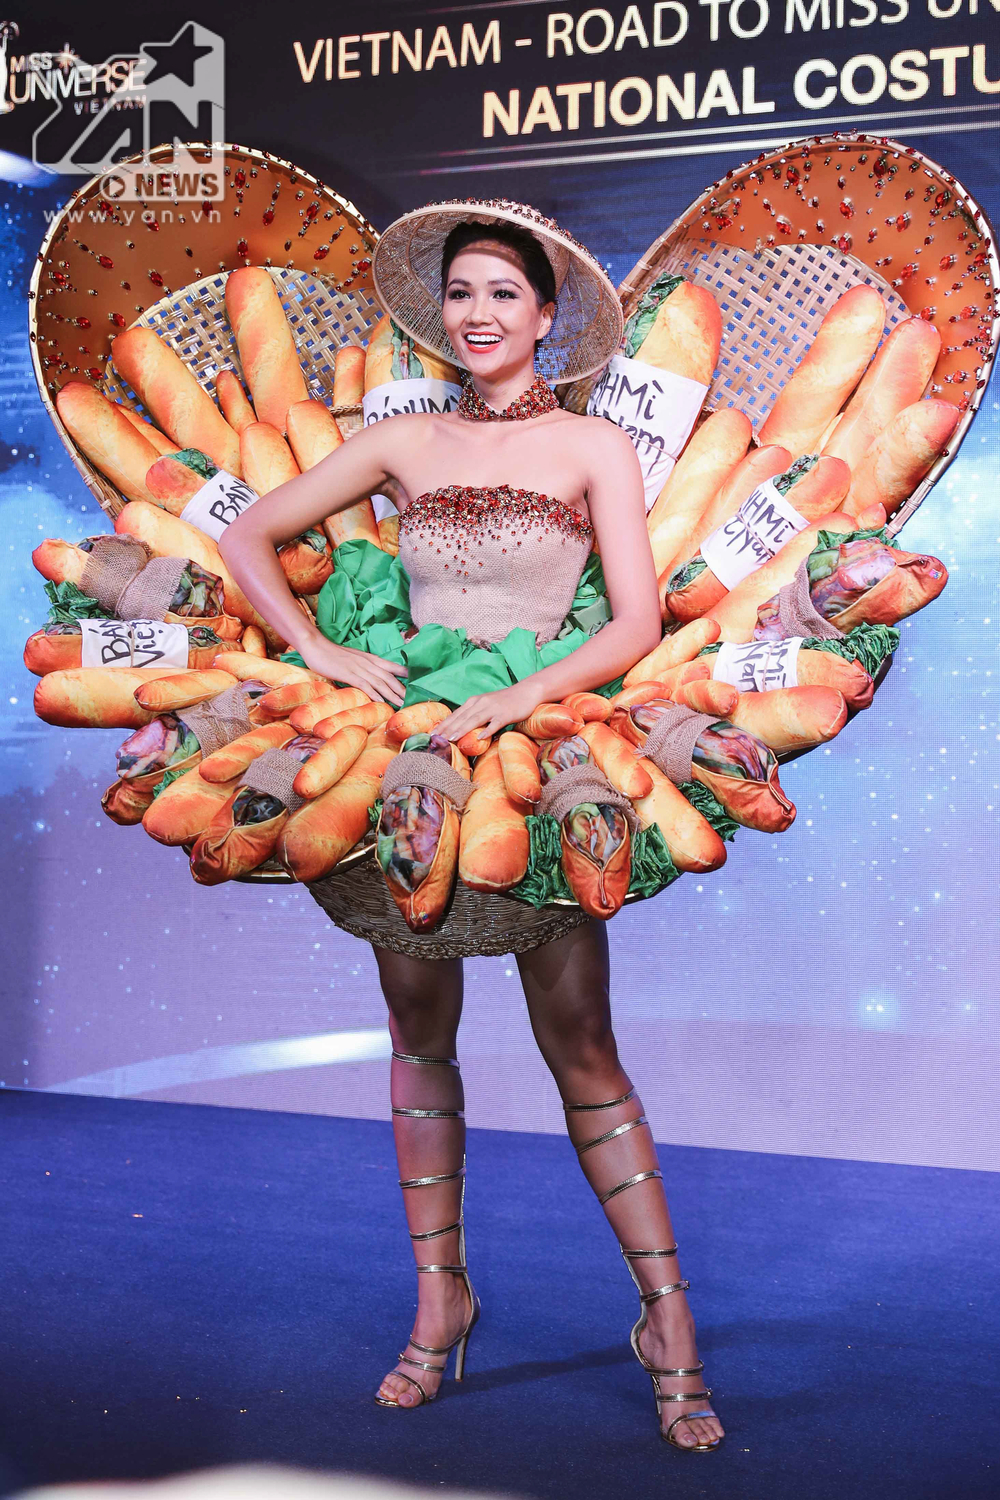 
Bộ quốc phục "Bánh mì" quá đỗi độc đáo này của đại diện Việt Nam đã nhận không ít những phản hồi tiêu cực từ khán giả.